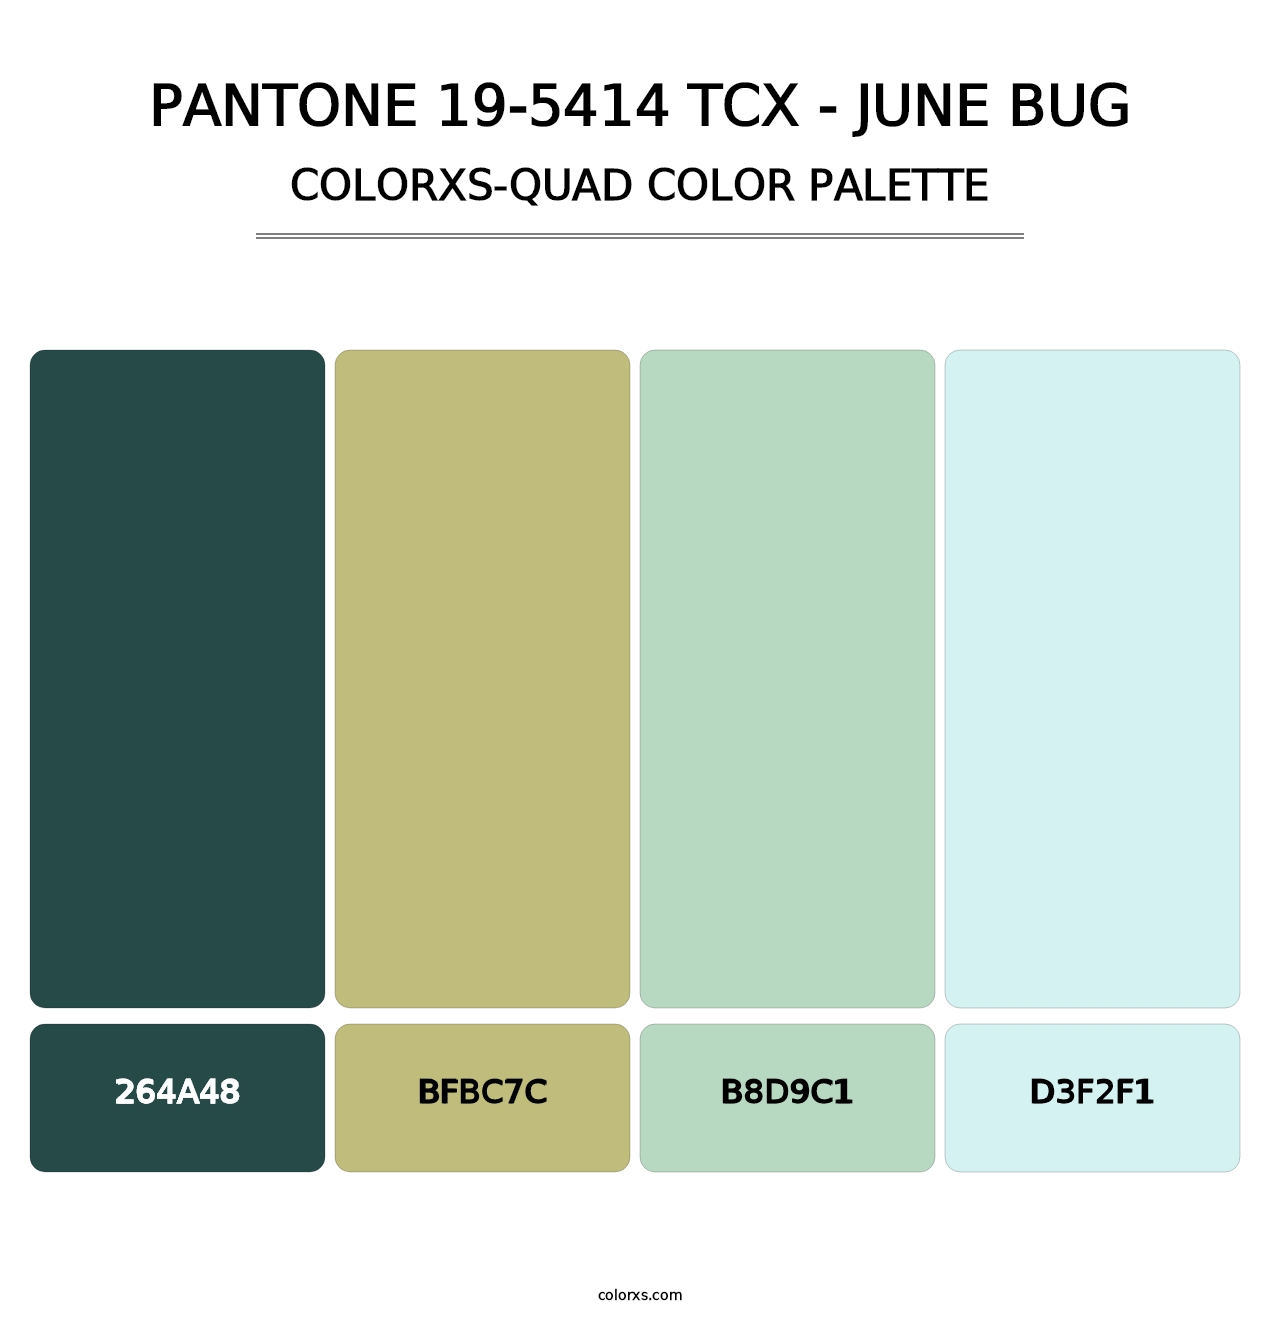 PANTONE 19-5414 TCX - June Bug - Colorxs Quad Palette